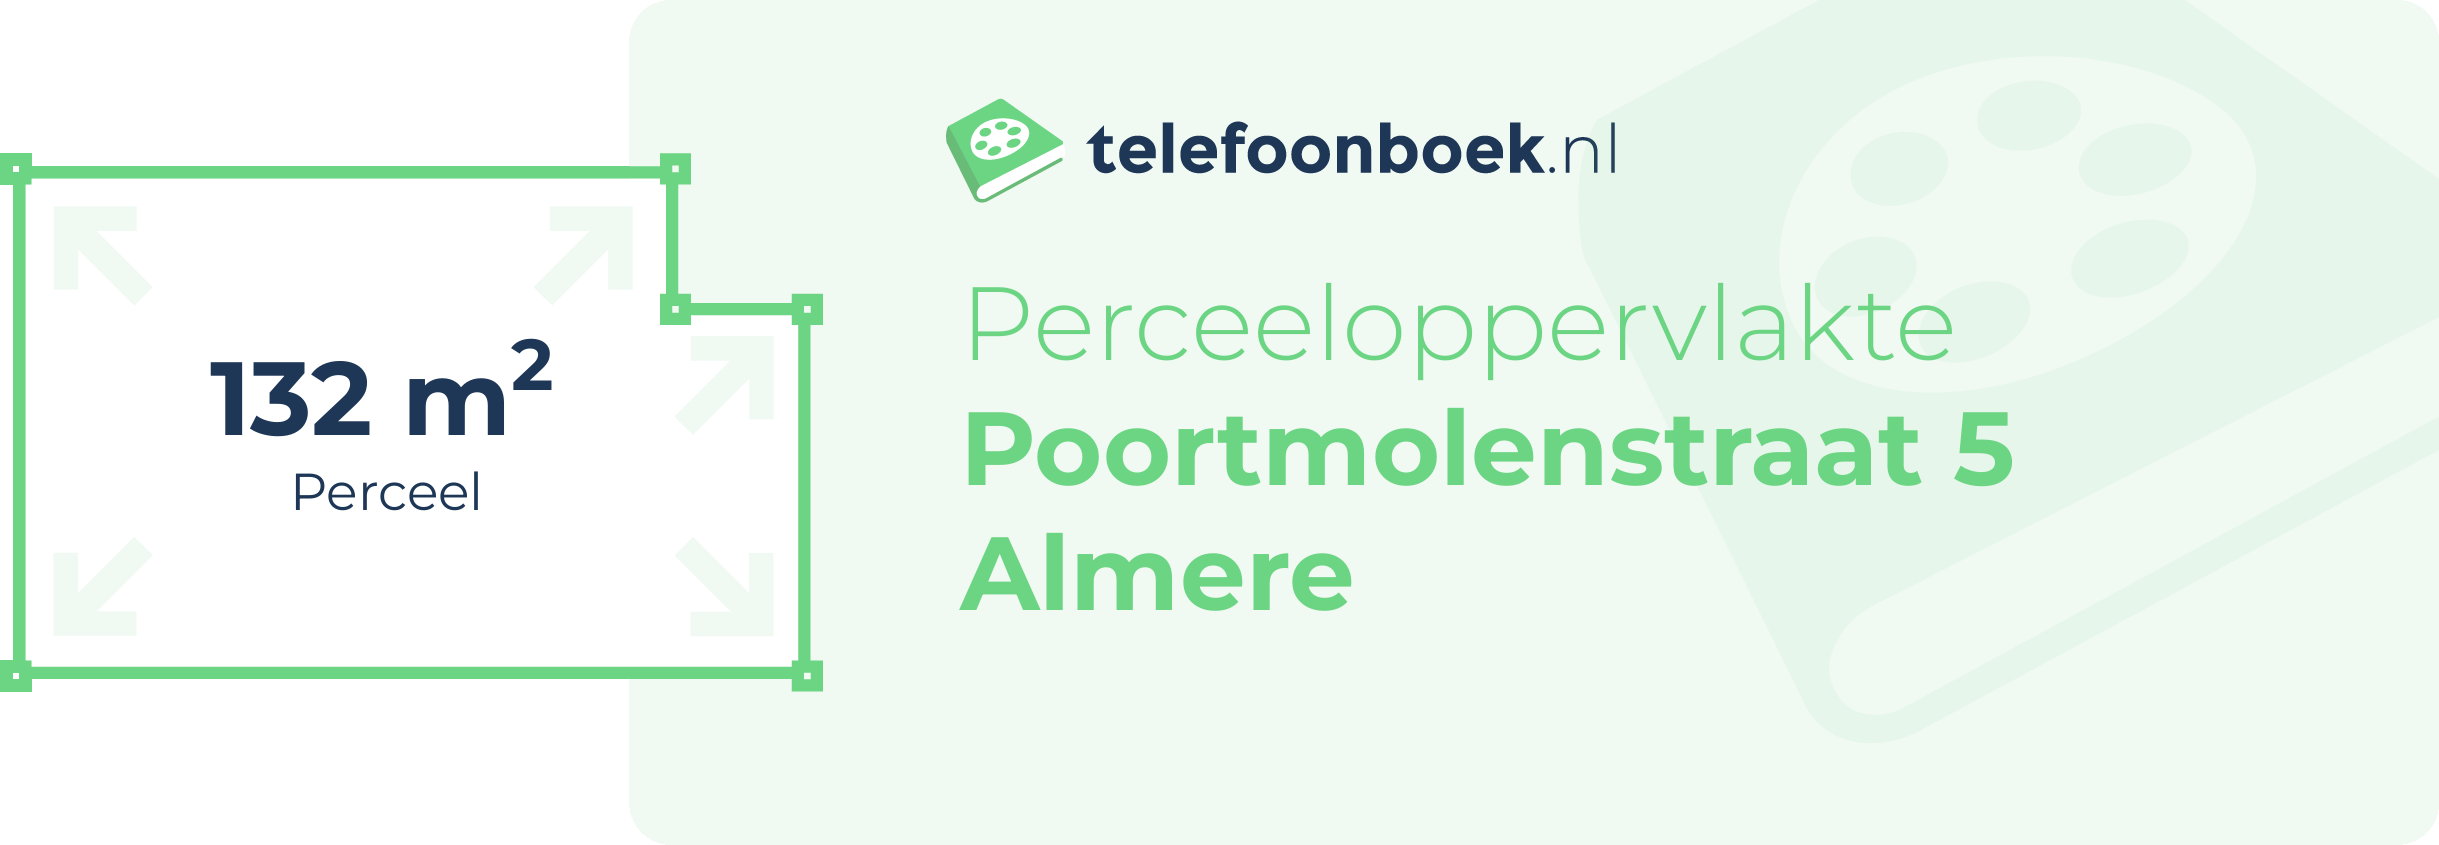 Perceeloppervlakte Poortmolenstraat 5 Almere